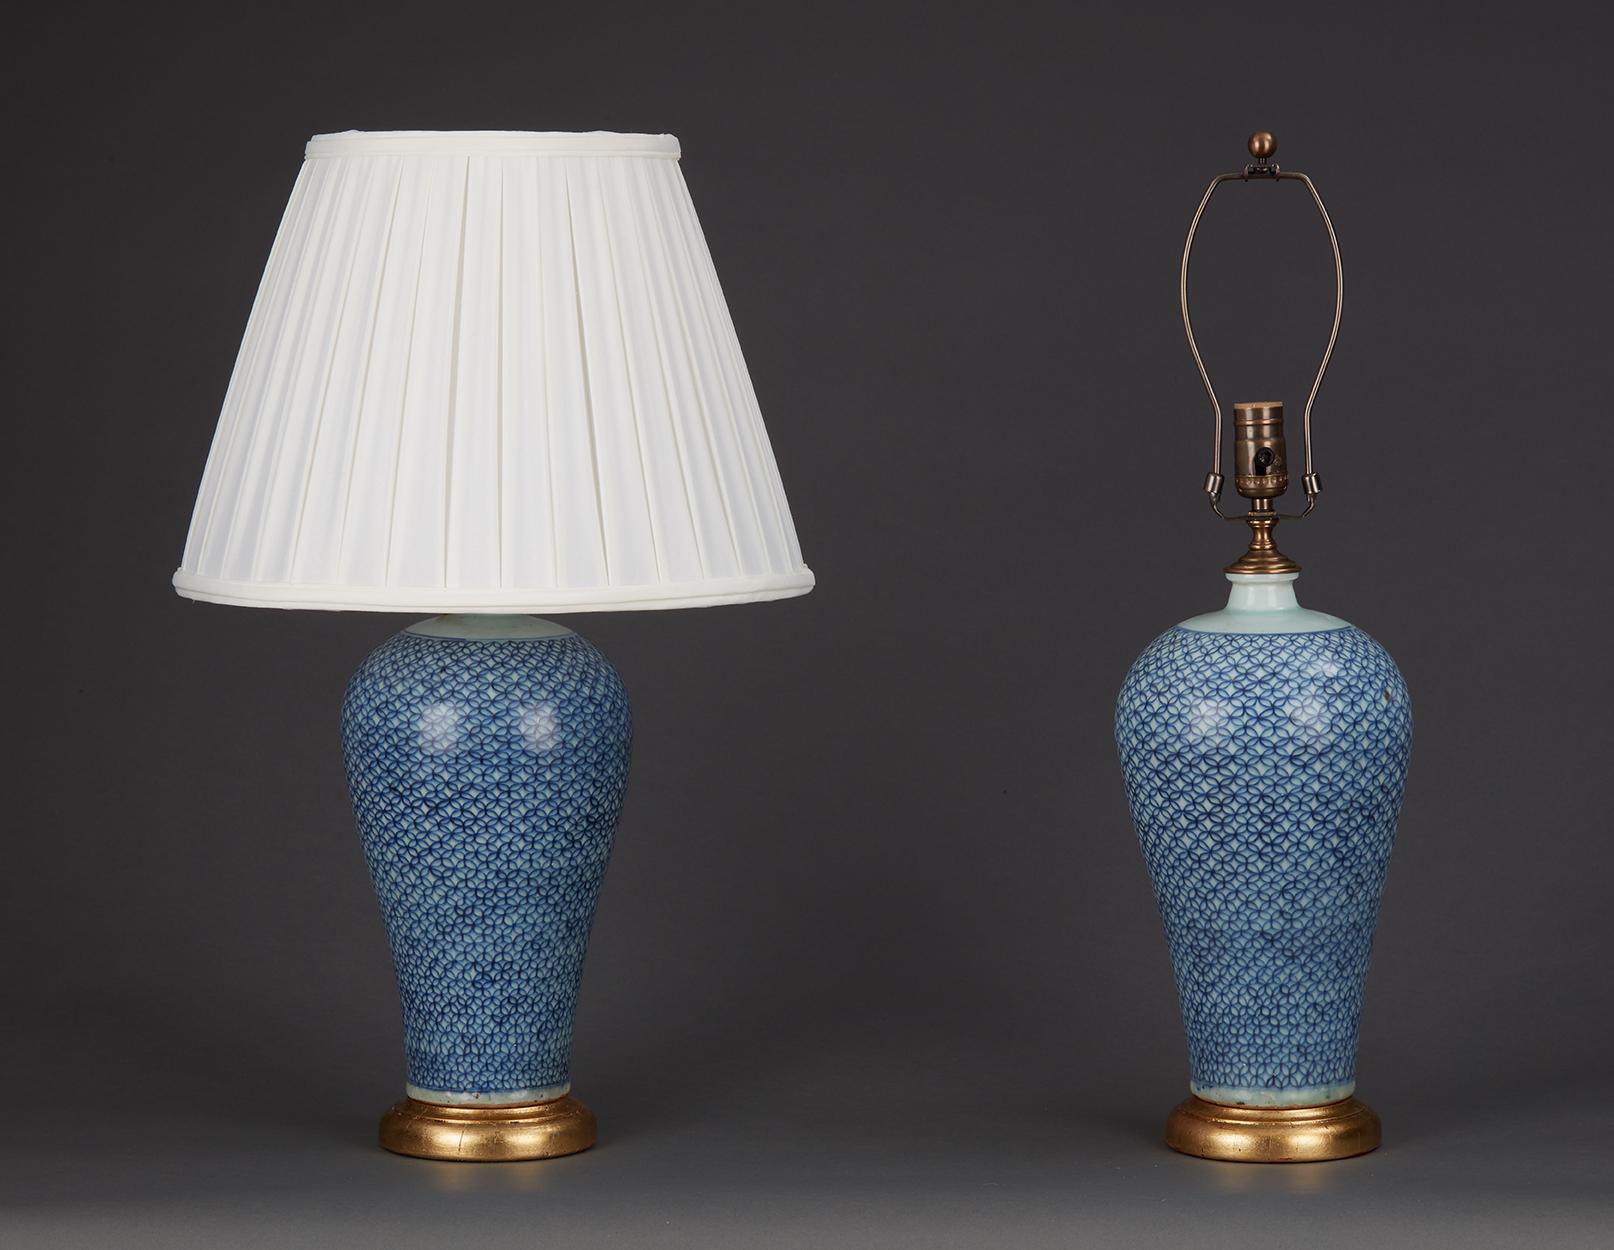 Paire de lampes chinoises en porcelaine bleue et blanche à motif géométrique. Bases dorées.  20ème siècle.
7.5